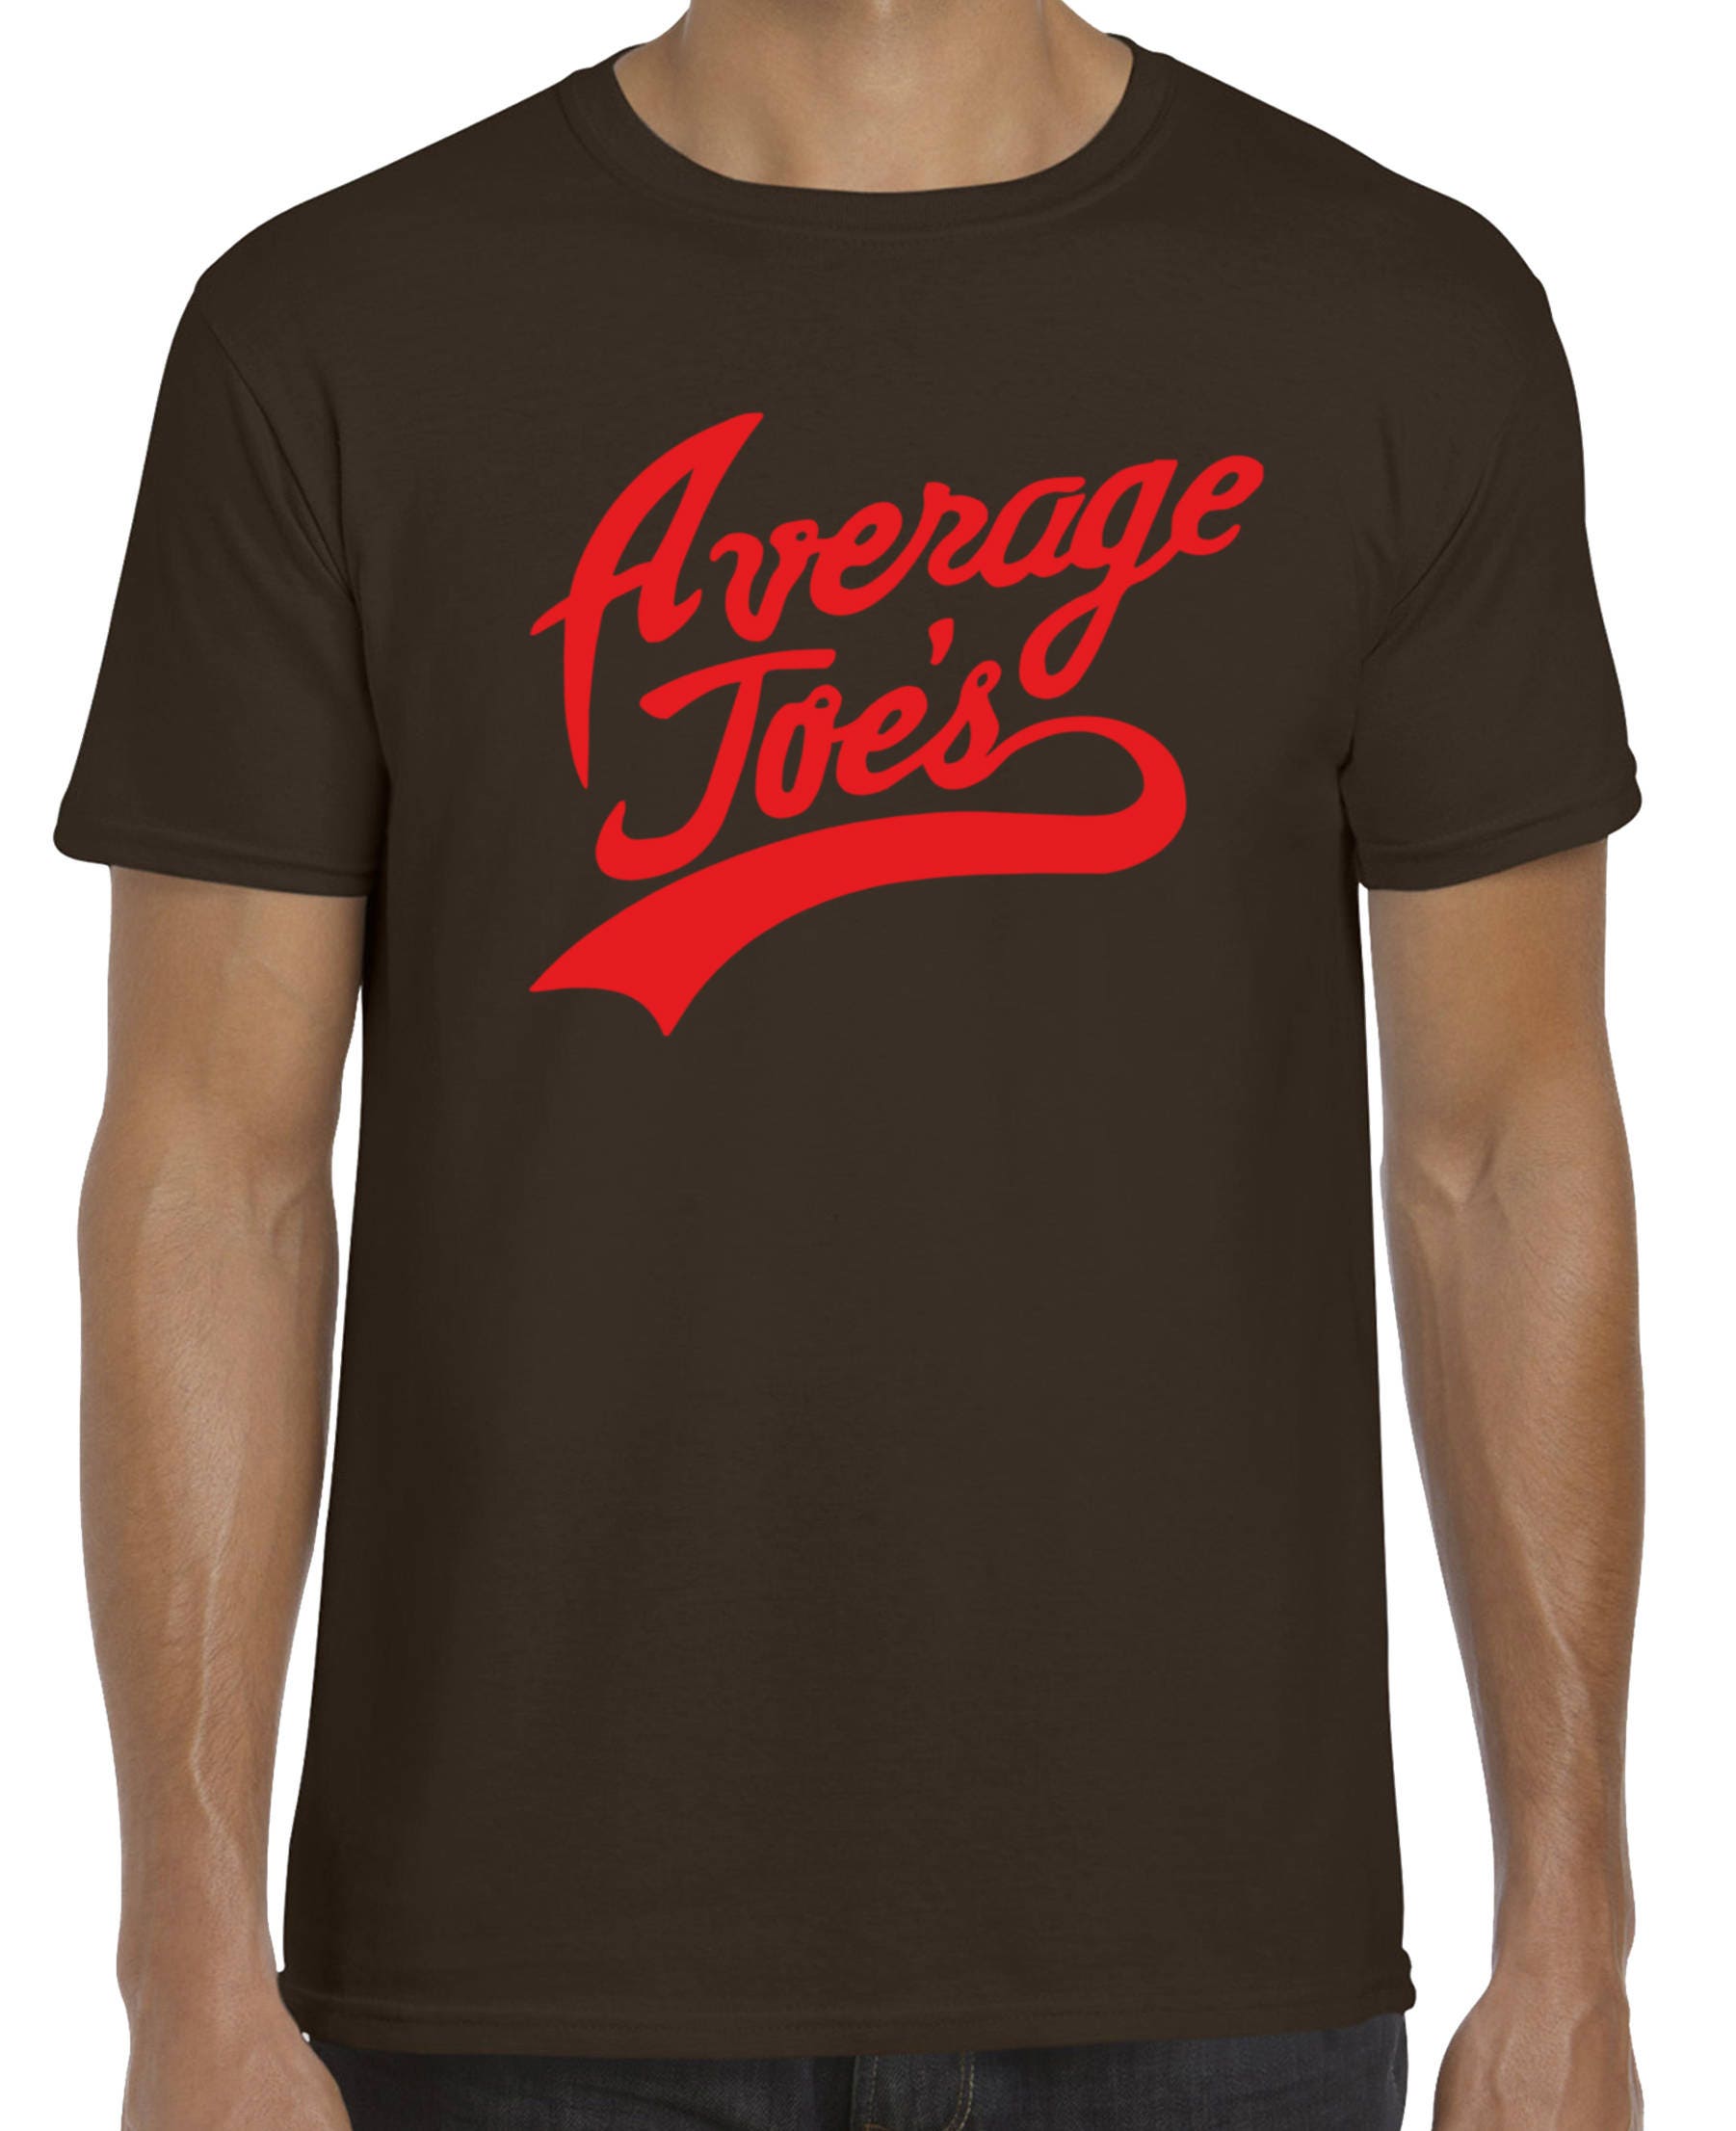 Average Joes T-shirt Various Sizes and Colours - Etsy UK